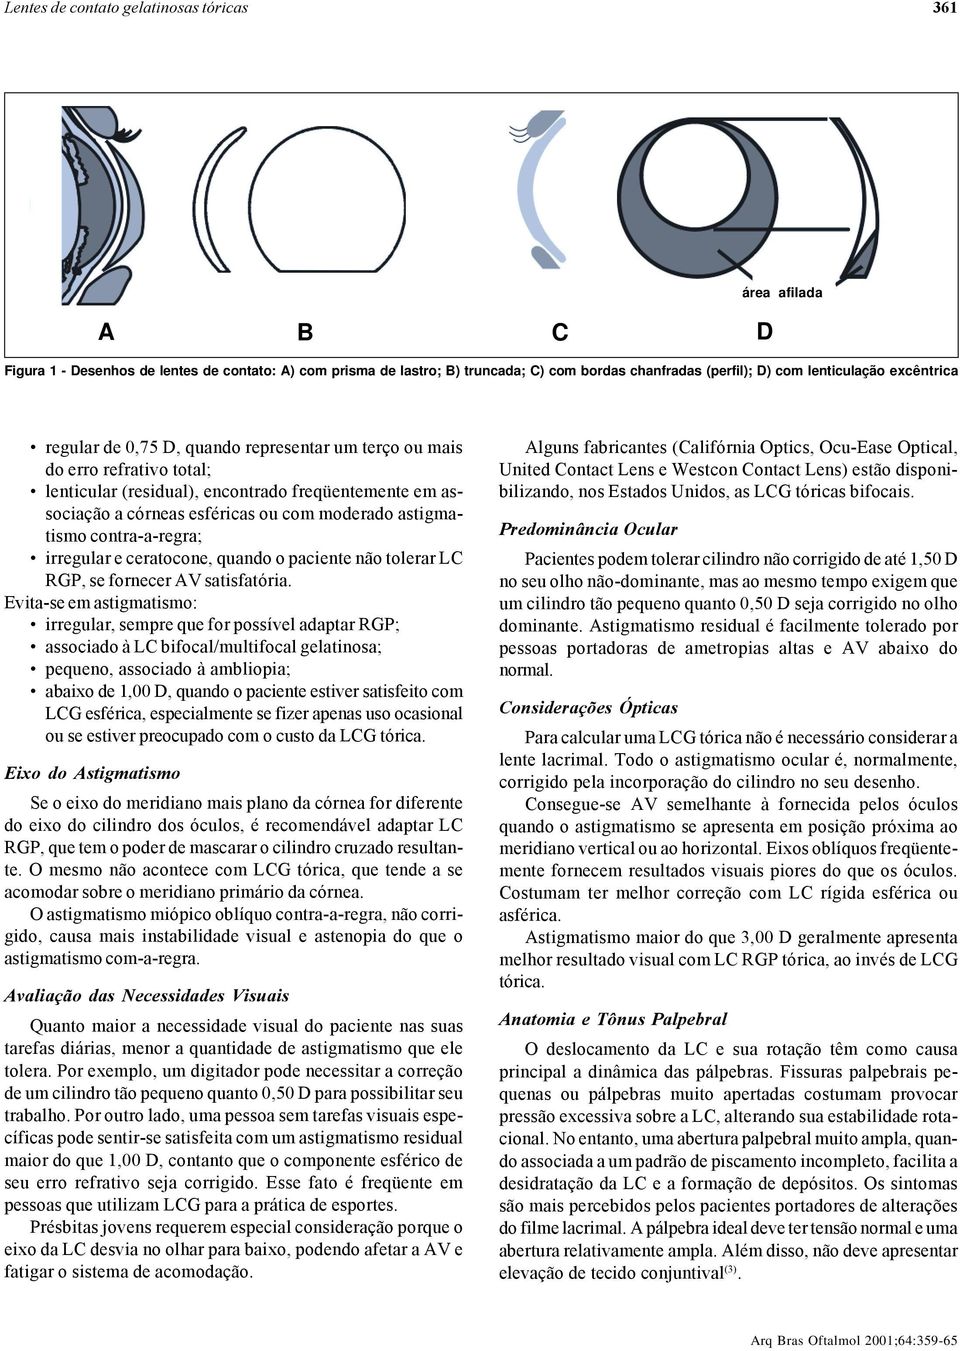 astigmatismo contra-a-regra; irregular e ceratocone, quando o paciente não tolerar L RGP, se fornecer AV satisfatória.